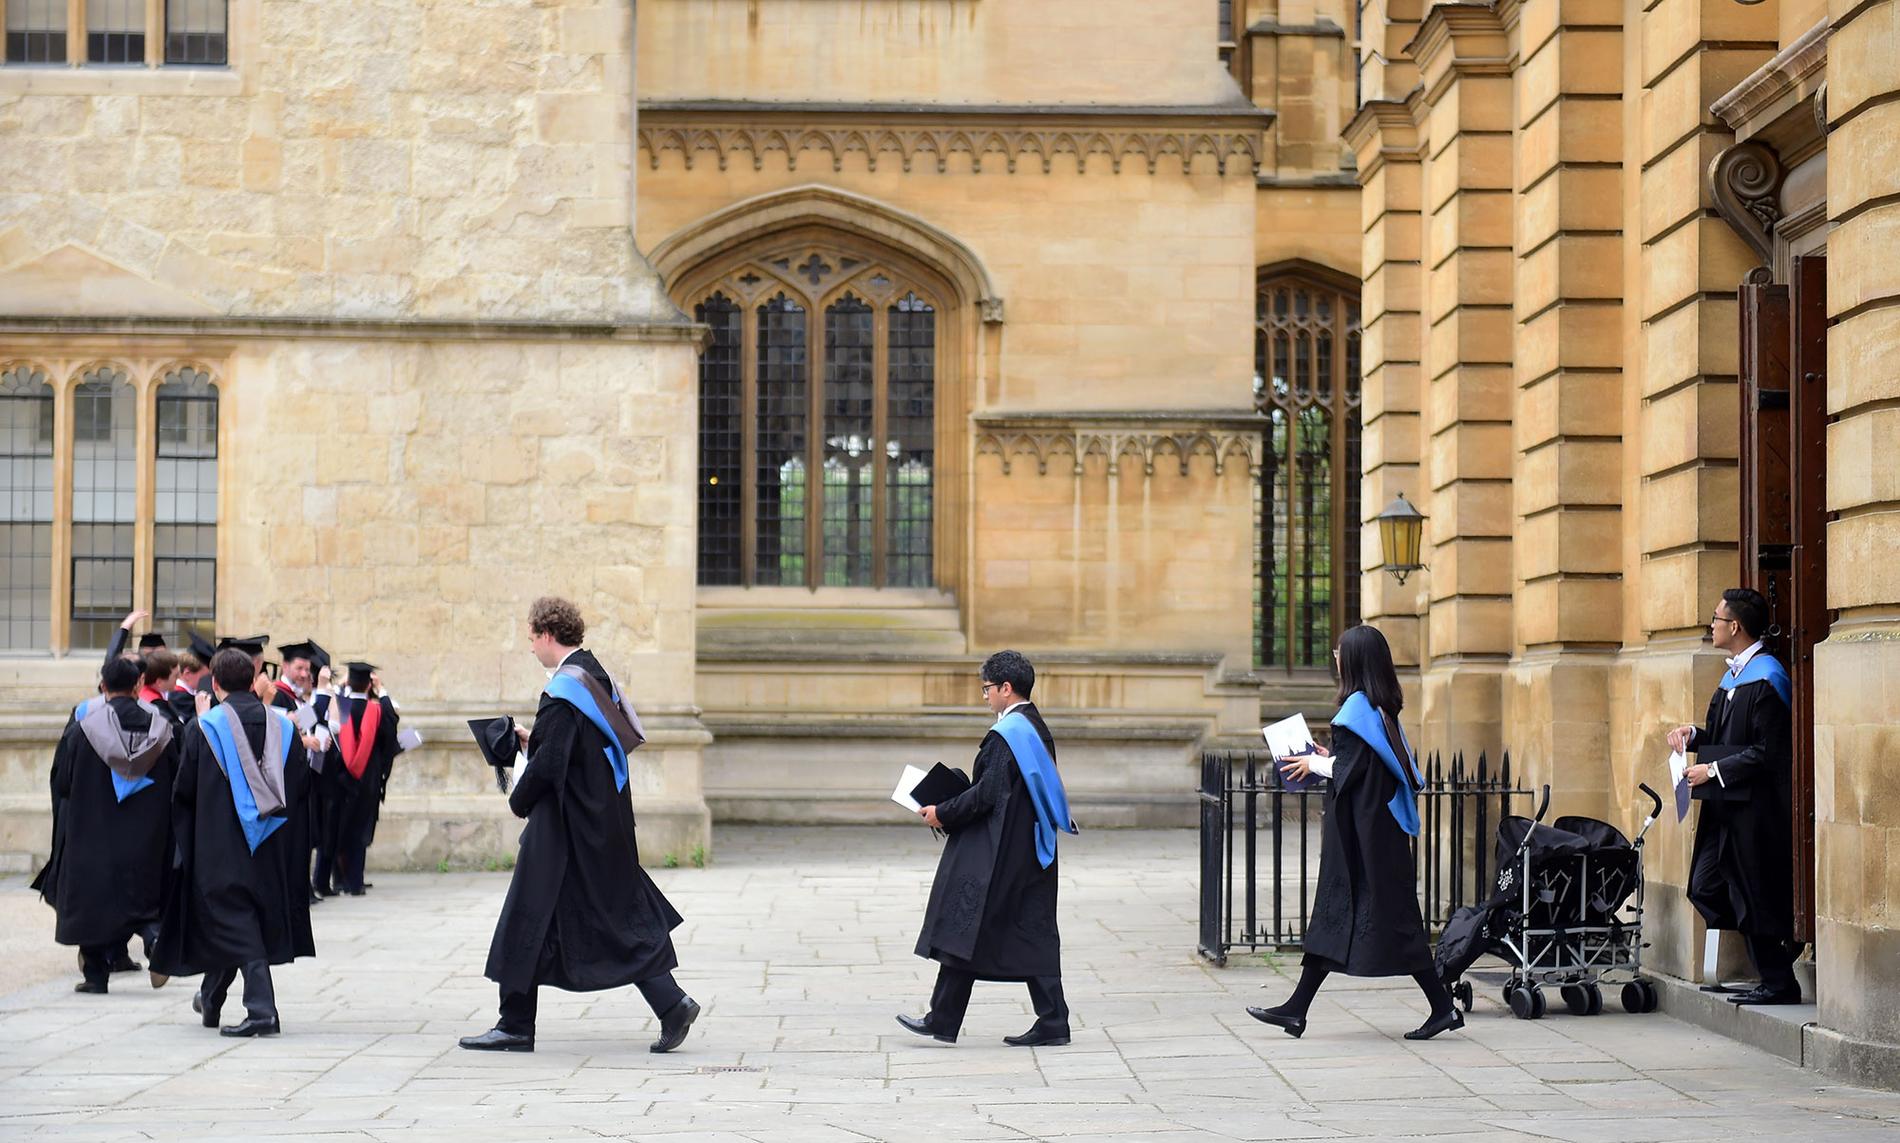 ANERKJENT: Oxford blir regnet som et av verdens beste universitet. I fjor kom prestisjeuniversitetet i England på en femteplass i rangeringen til The Center for World University Rankings (CWUR).